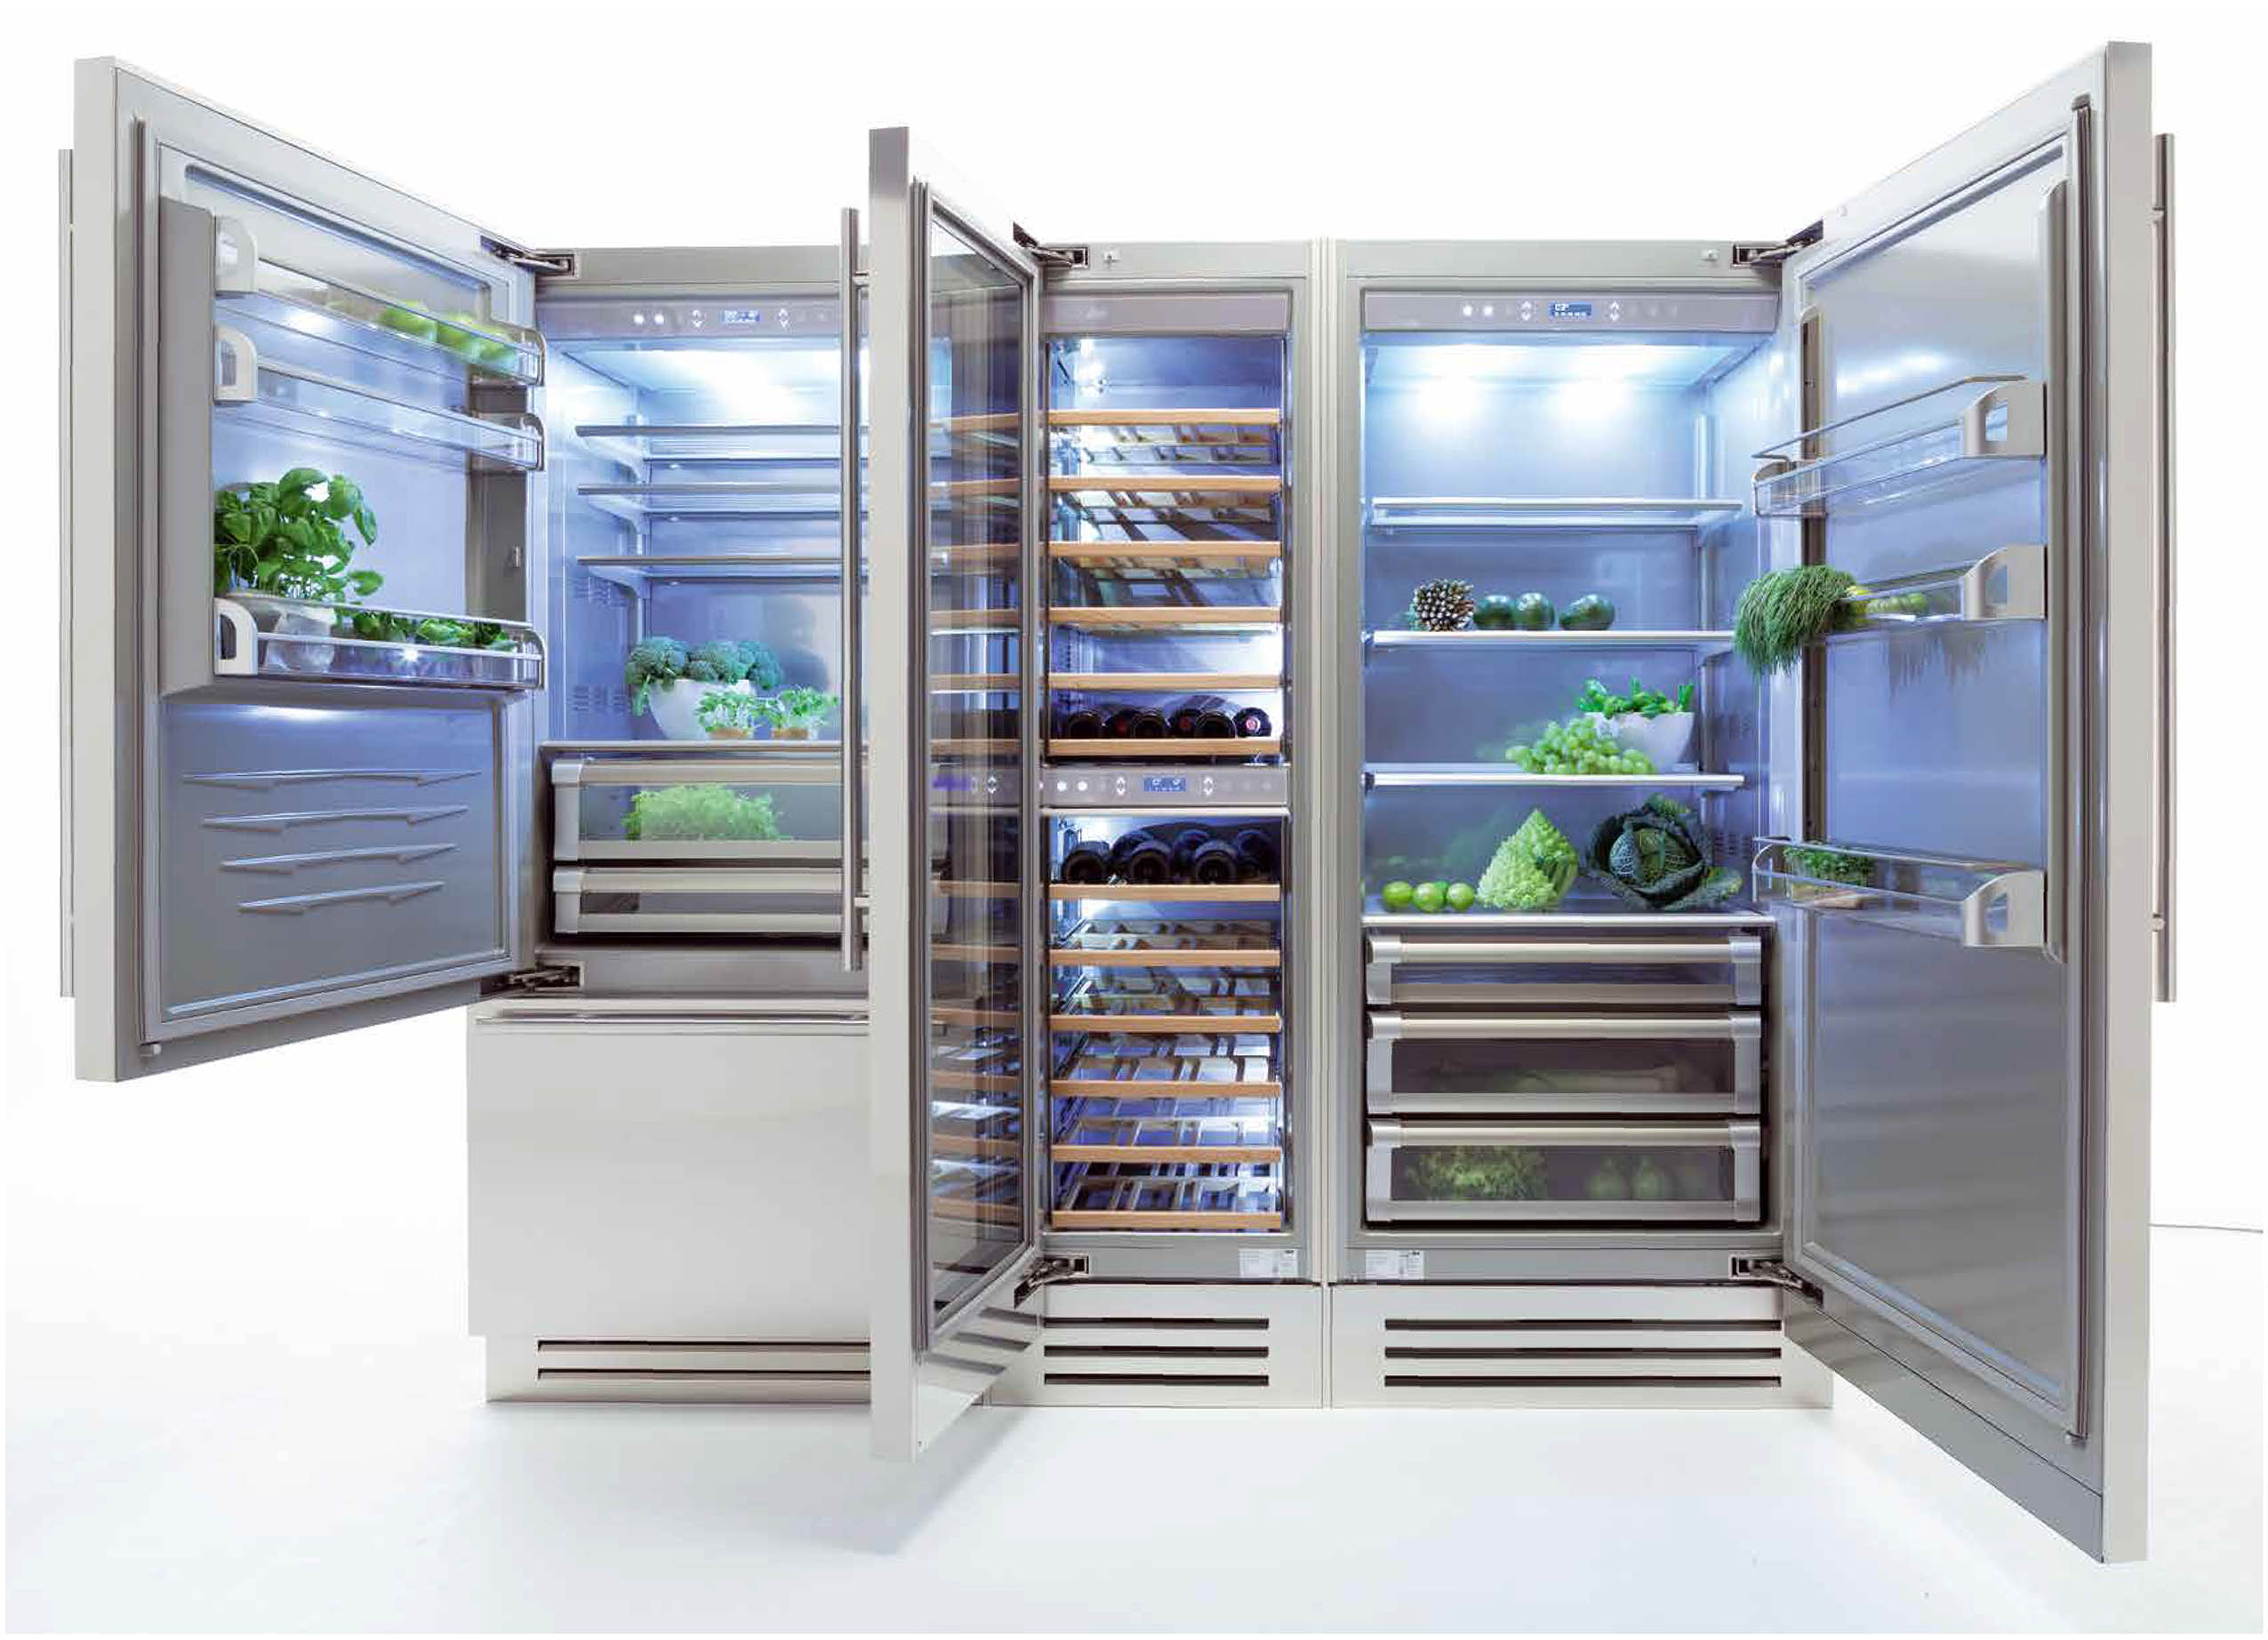 Холодильник встроенный двухкамерный no frost. Холодильник Fhiaba s8990fr6. Встраиваемый холодильник Fhiaba m8991tgt6. Fhiaba ks8990fr6. Холодильник Fhiaba x15990otw6.